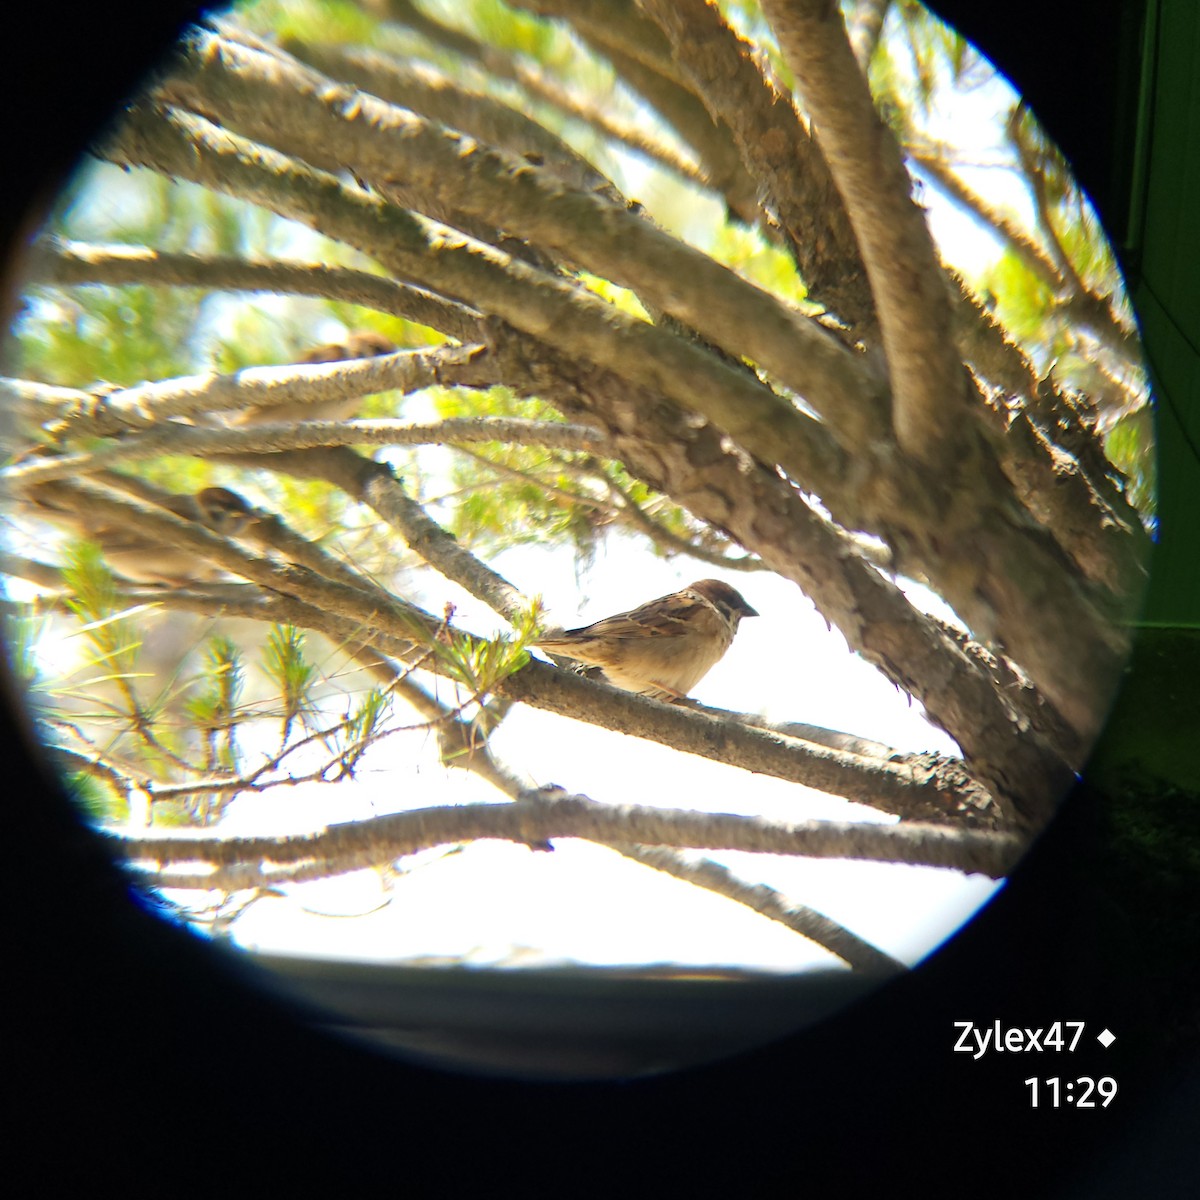 Eurasian Tree Sparrow - Dusky Thrush